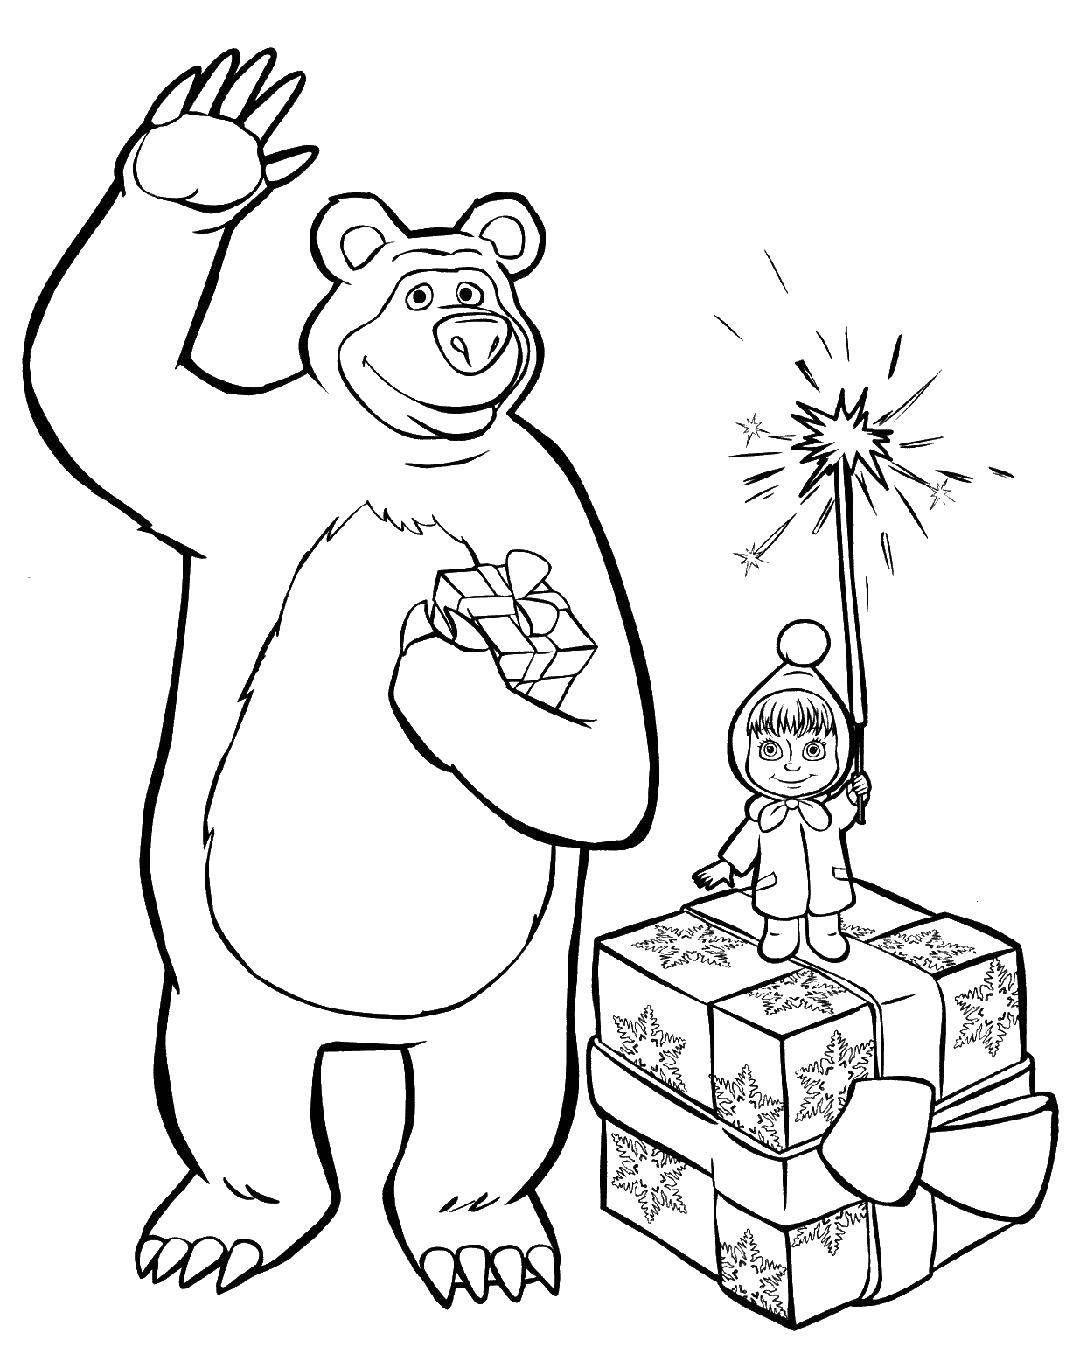 Розмальовки  Маша і ведмідь. Завантажити розмальовку Персонаж з мультфільму Маша і Ведмідь.  Роздрукувати ,феєрверк,